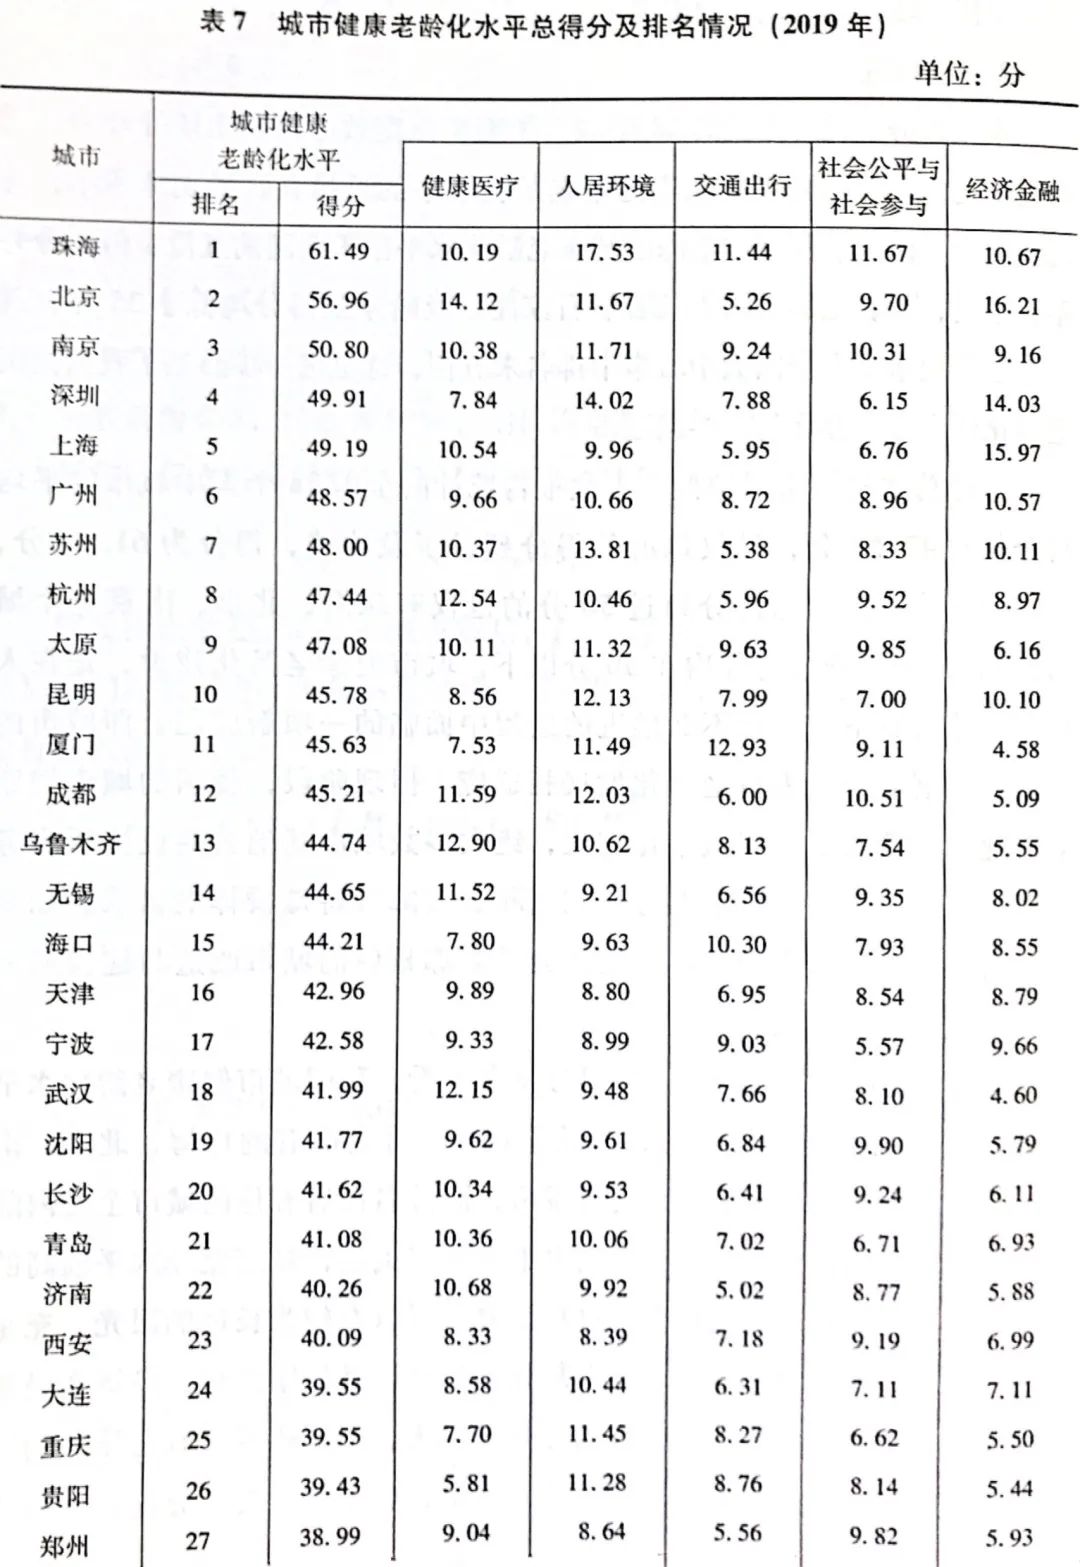 38城养老排名 中国未富先老 延迟退休可解燃眉之急？（组图） - 2